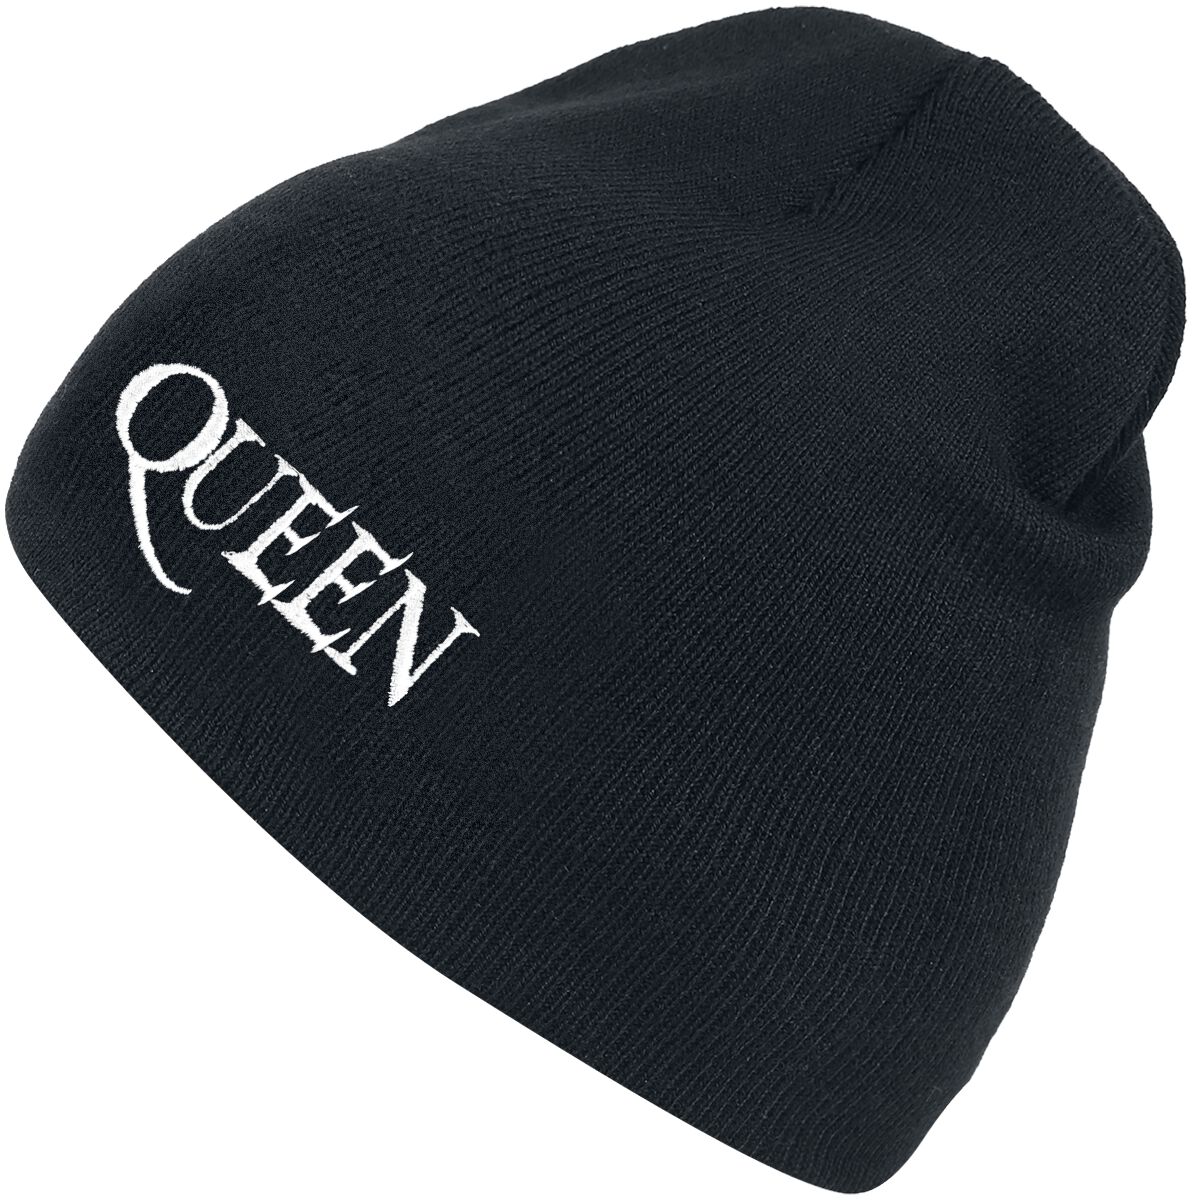 Queen Mütze - Logo - schwarz  - Lizenziertes Merchandise!